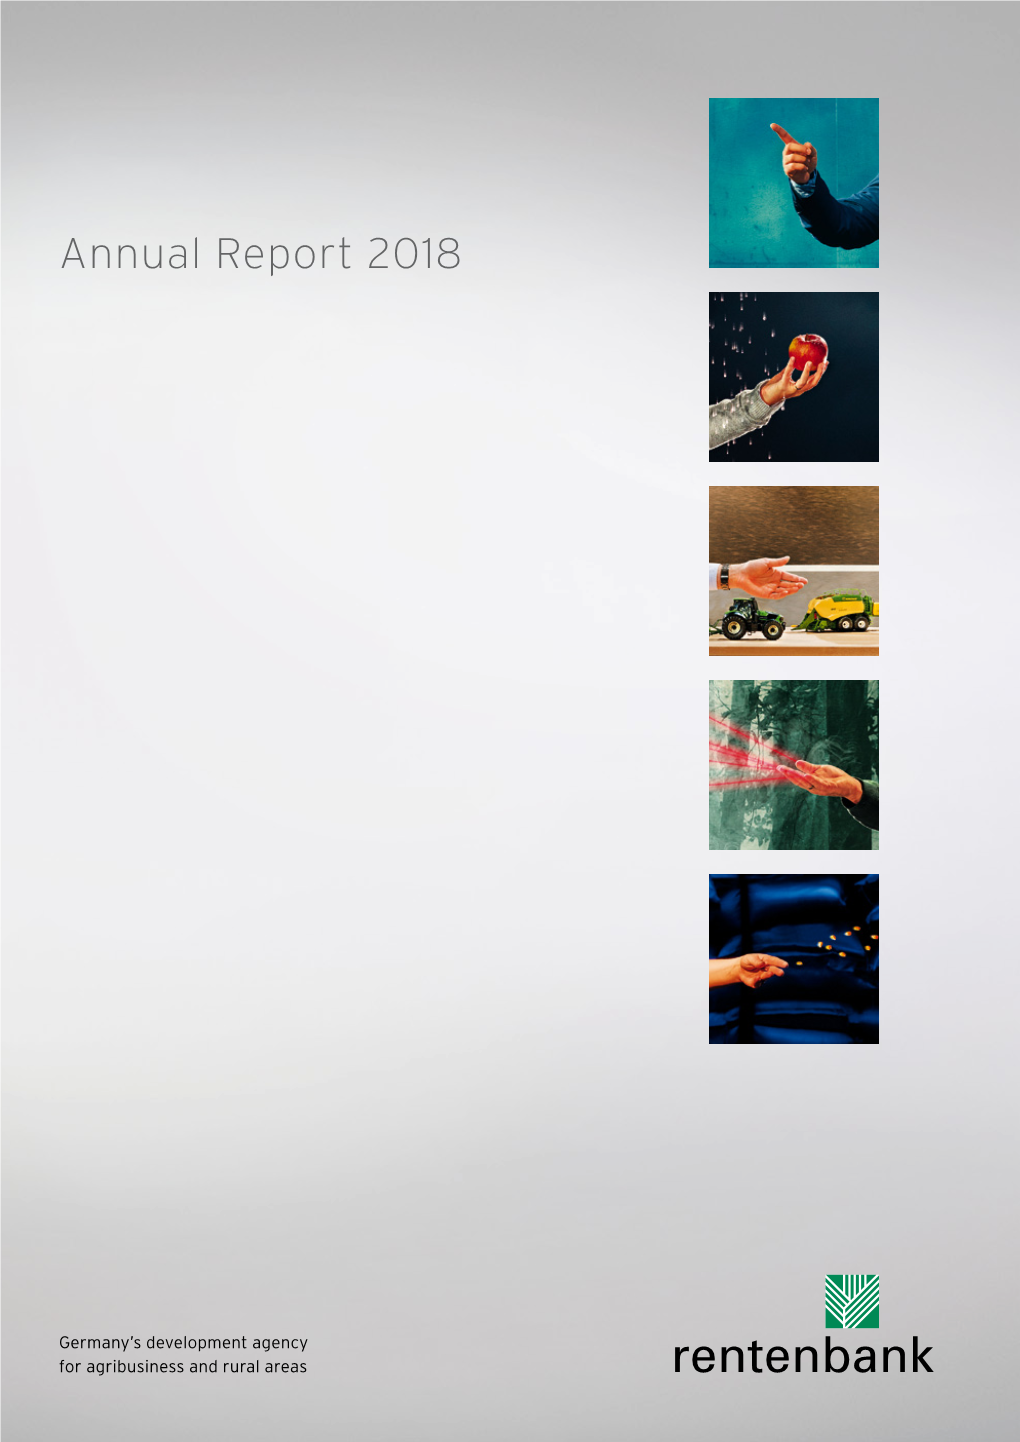 Annual Report 2018 Annual Report 2018 Annual Report